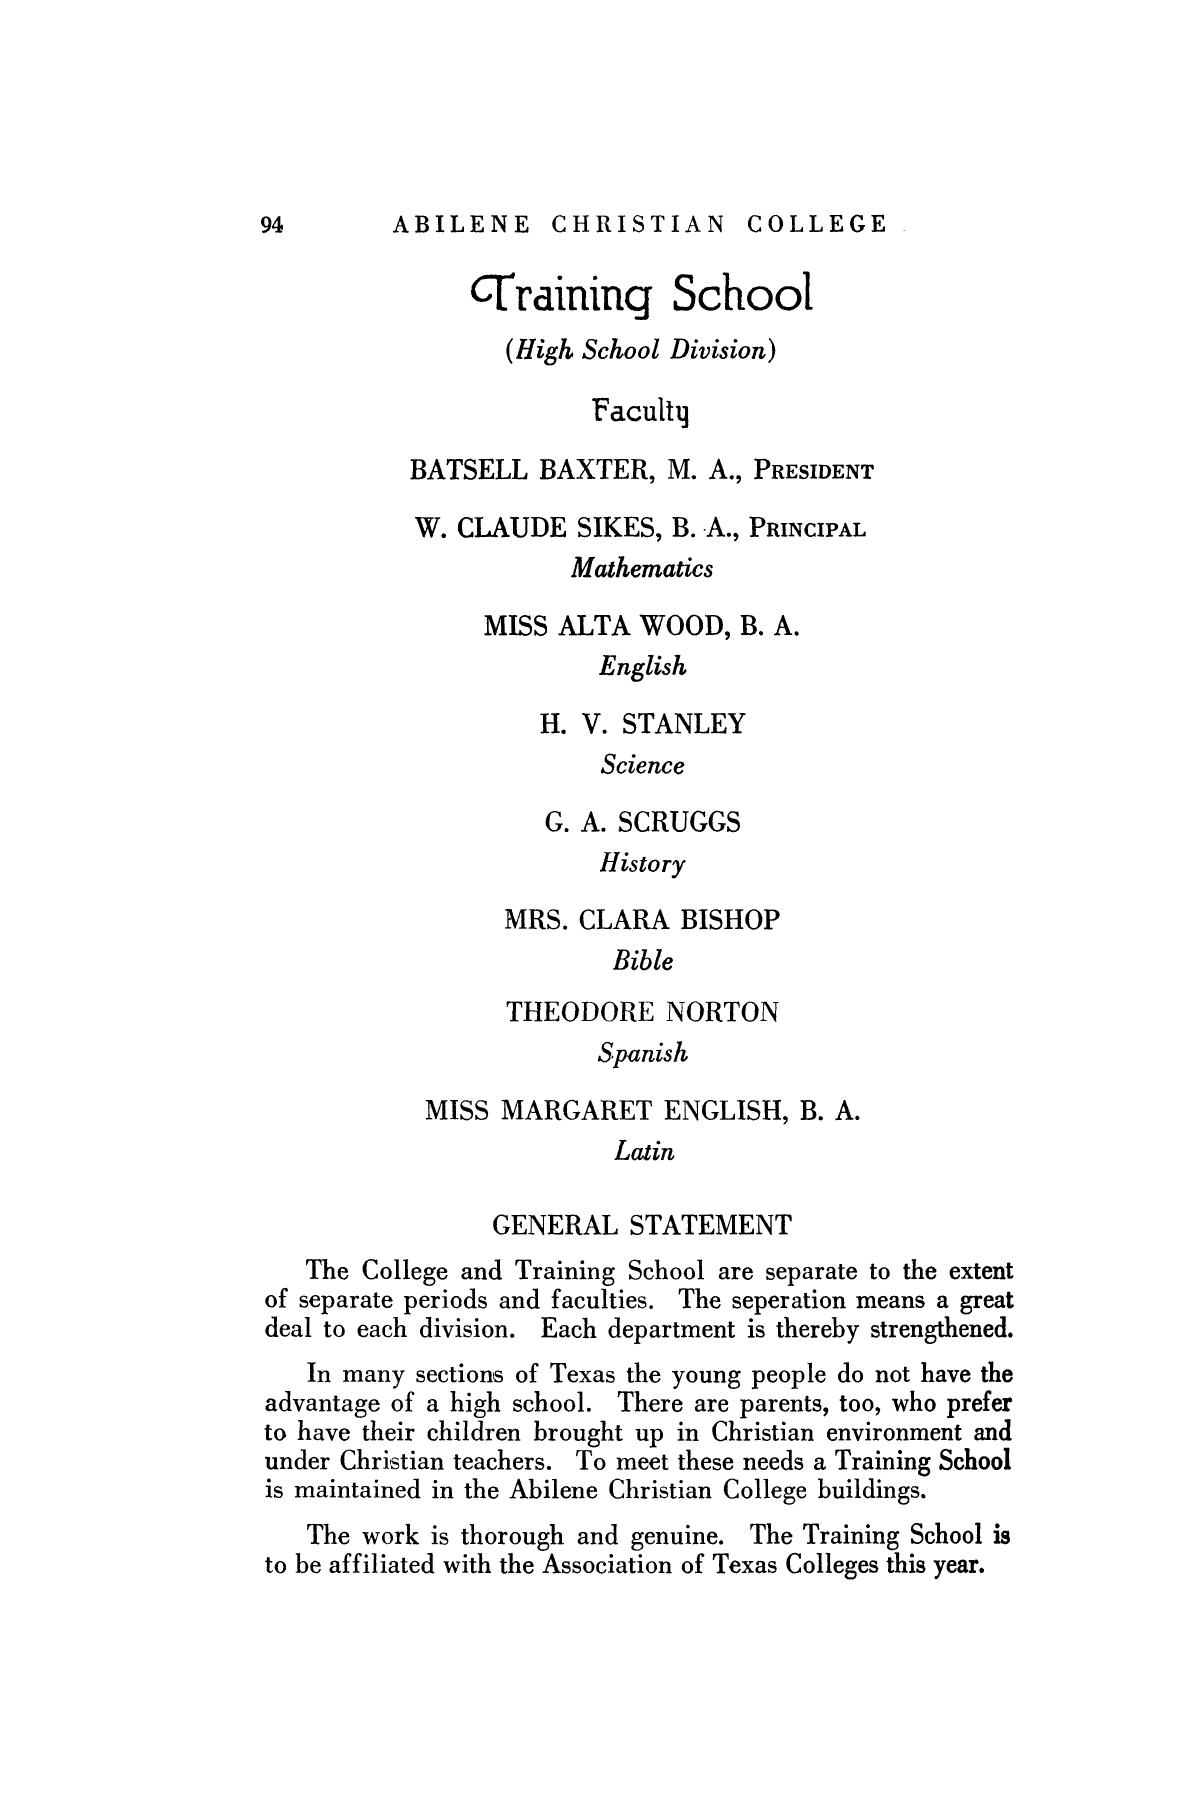 Catalog of Abilene Christian College, 1925-1926
                                                
                                                    94
                                                